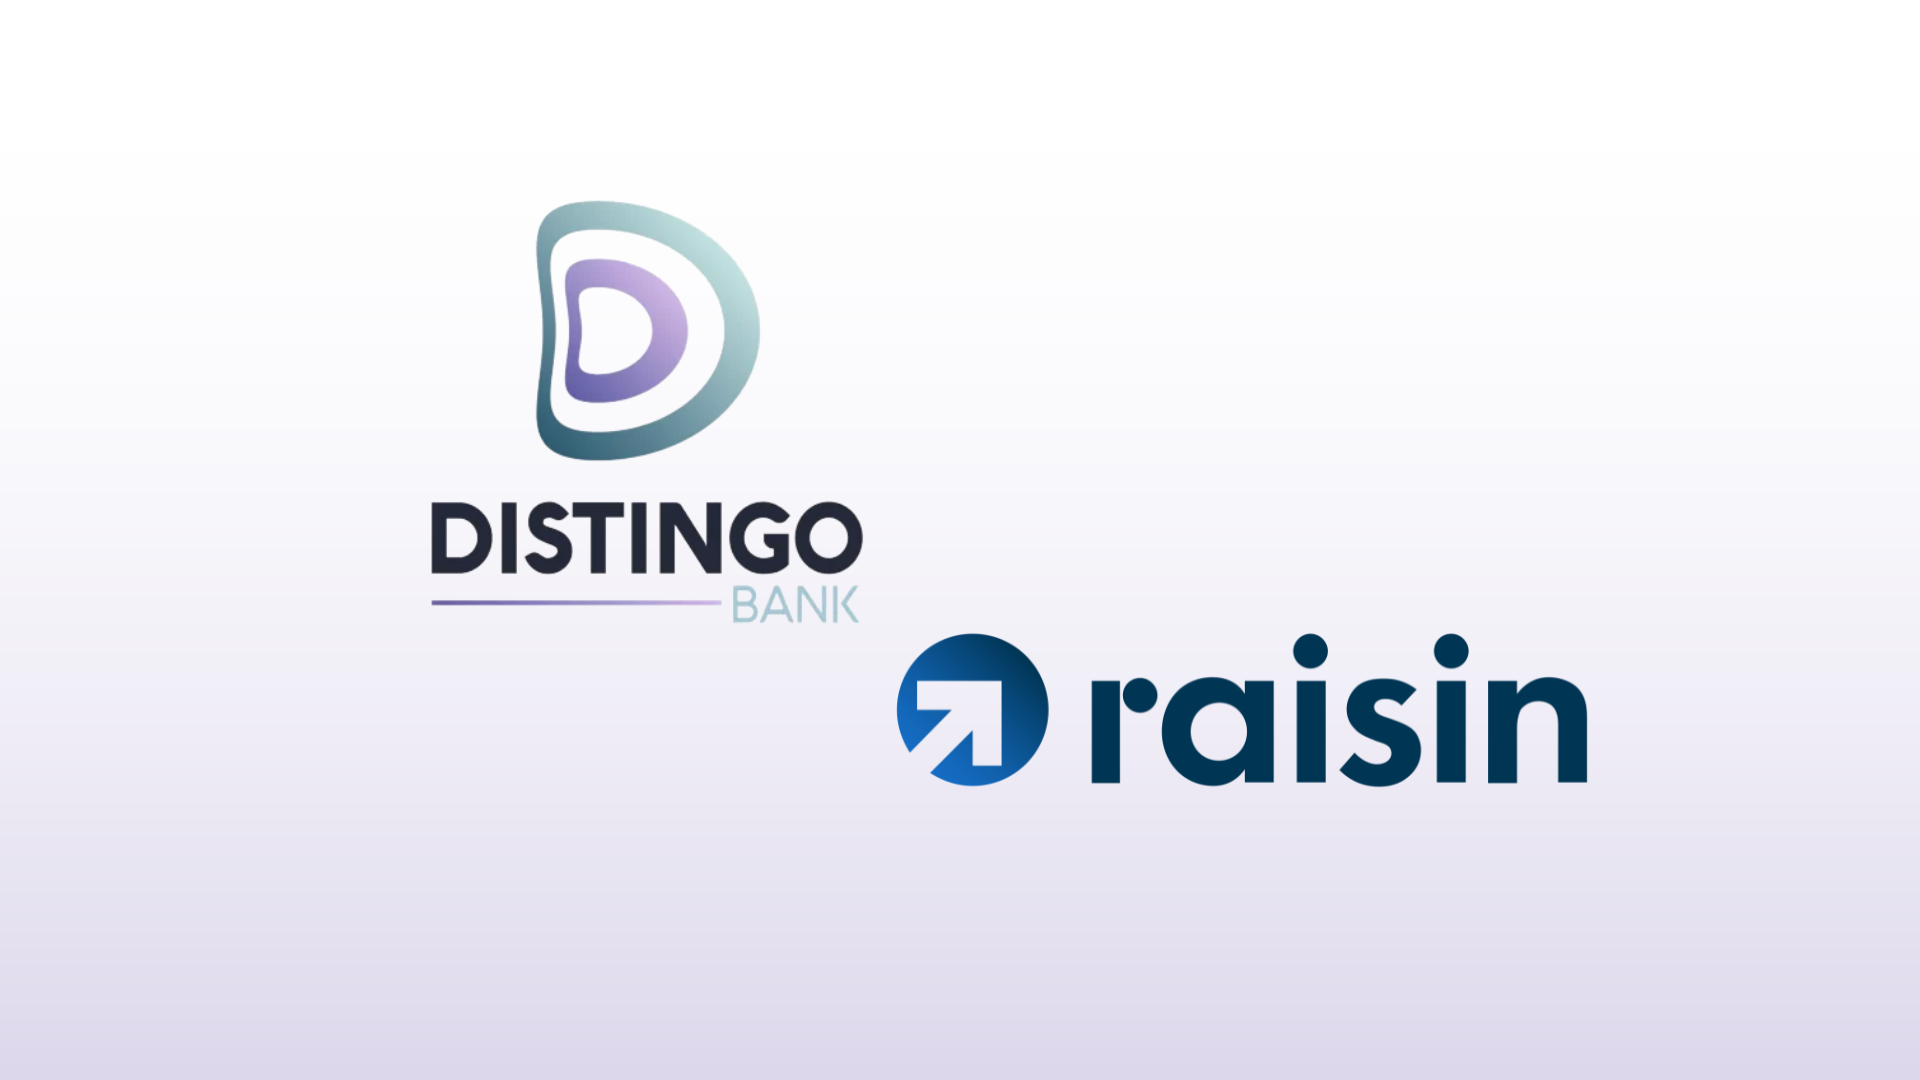 Distingo Bank s'ouvre à l'Espagne et aux Pays-Bas avec la plateforme d'investissement Raisin